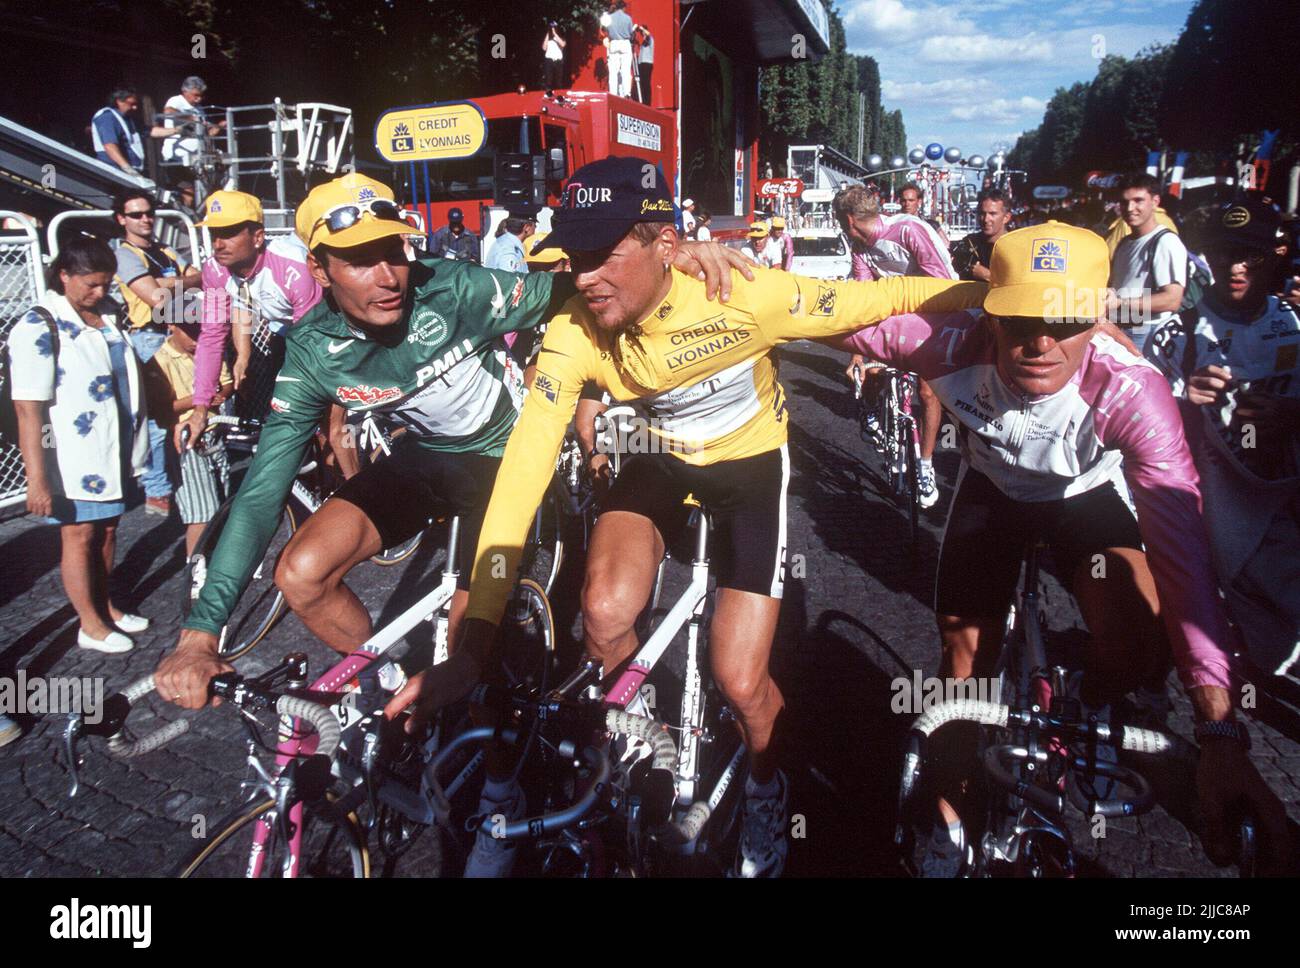 FOTO DE ARCHIVO: Hace 25 años, el 27 de julio de 1997, Jan ULLRICH ganó el  Tour de Francia, 03SN TourdeFrance 1997SP.jpg por la izquierda. Erik ZABEL,  Alemania, Team Telekom, en la